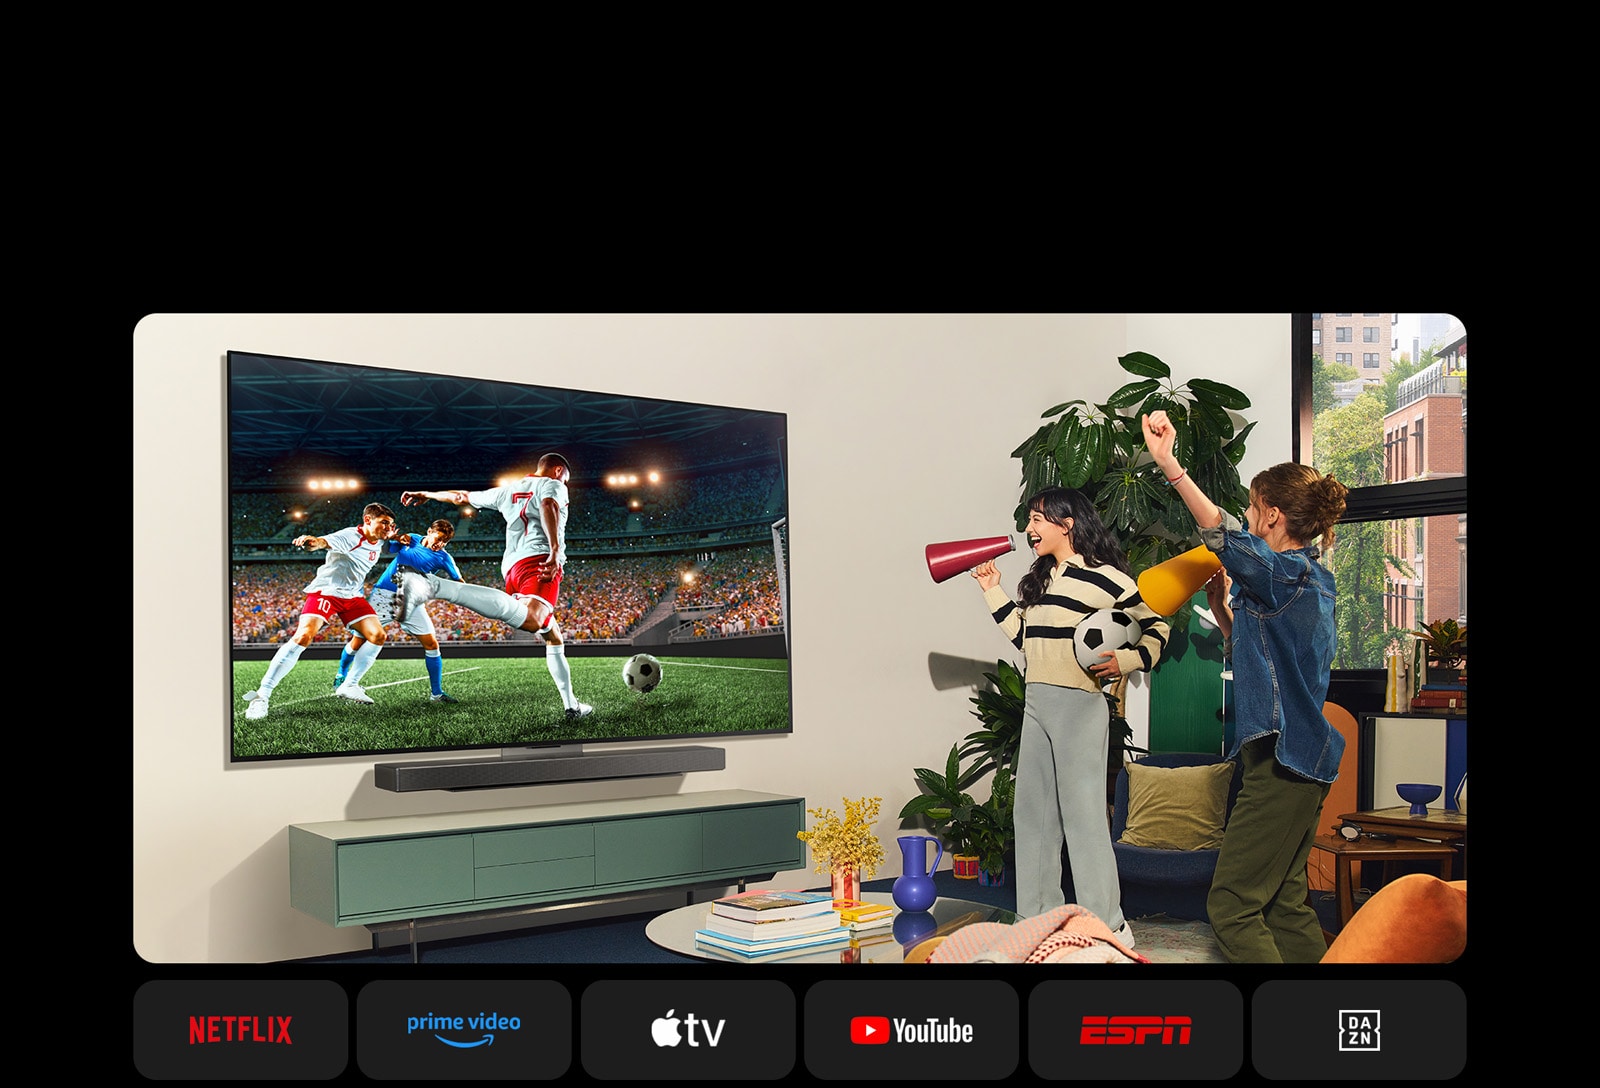 Dve ženy sledujú futbalový zápas v útulnej obývacej miestnosti.Jedna žena drží futbalovú loptu a obe povzbudzujú svoj tím žltými a červenými megafónmi.Nižšie sa zobrazujú tieto logá.Netflix, Amazon Prime Video, Apple TV, Youtube, ESPN a DAZN.